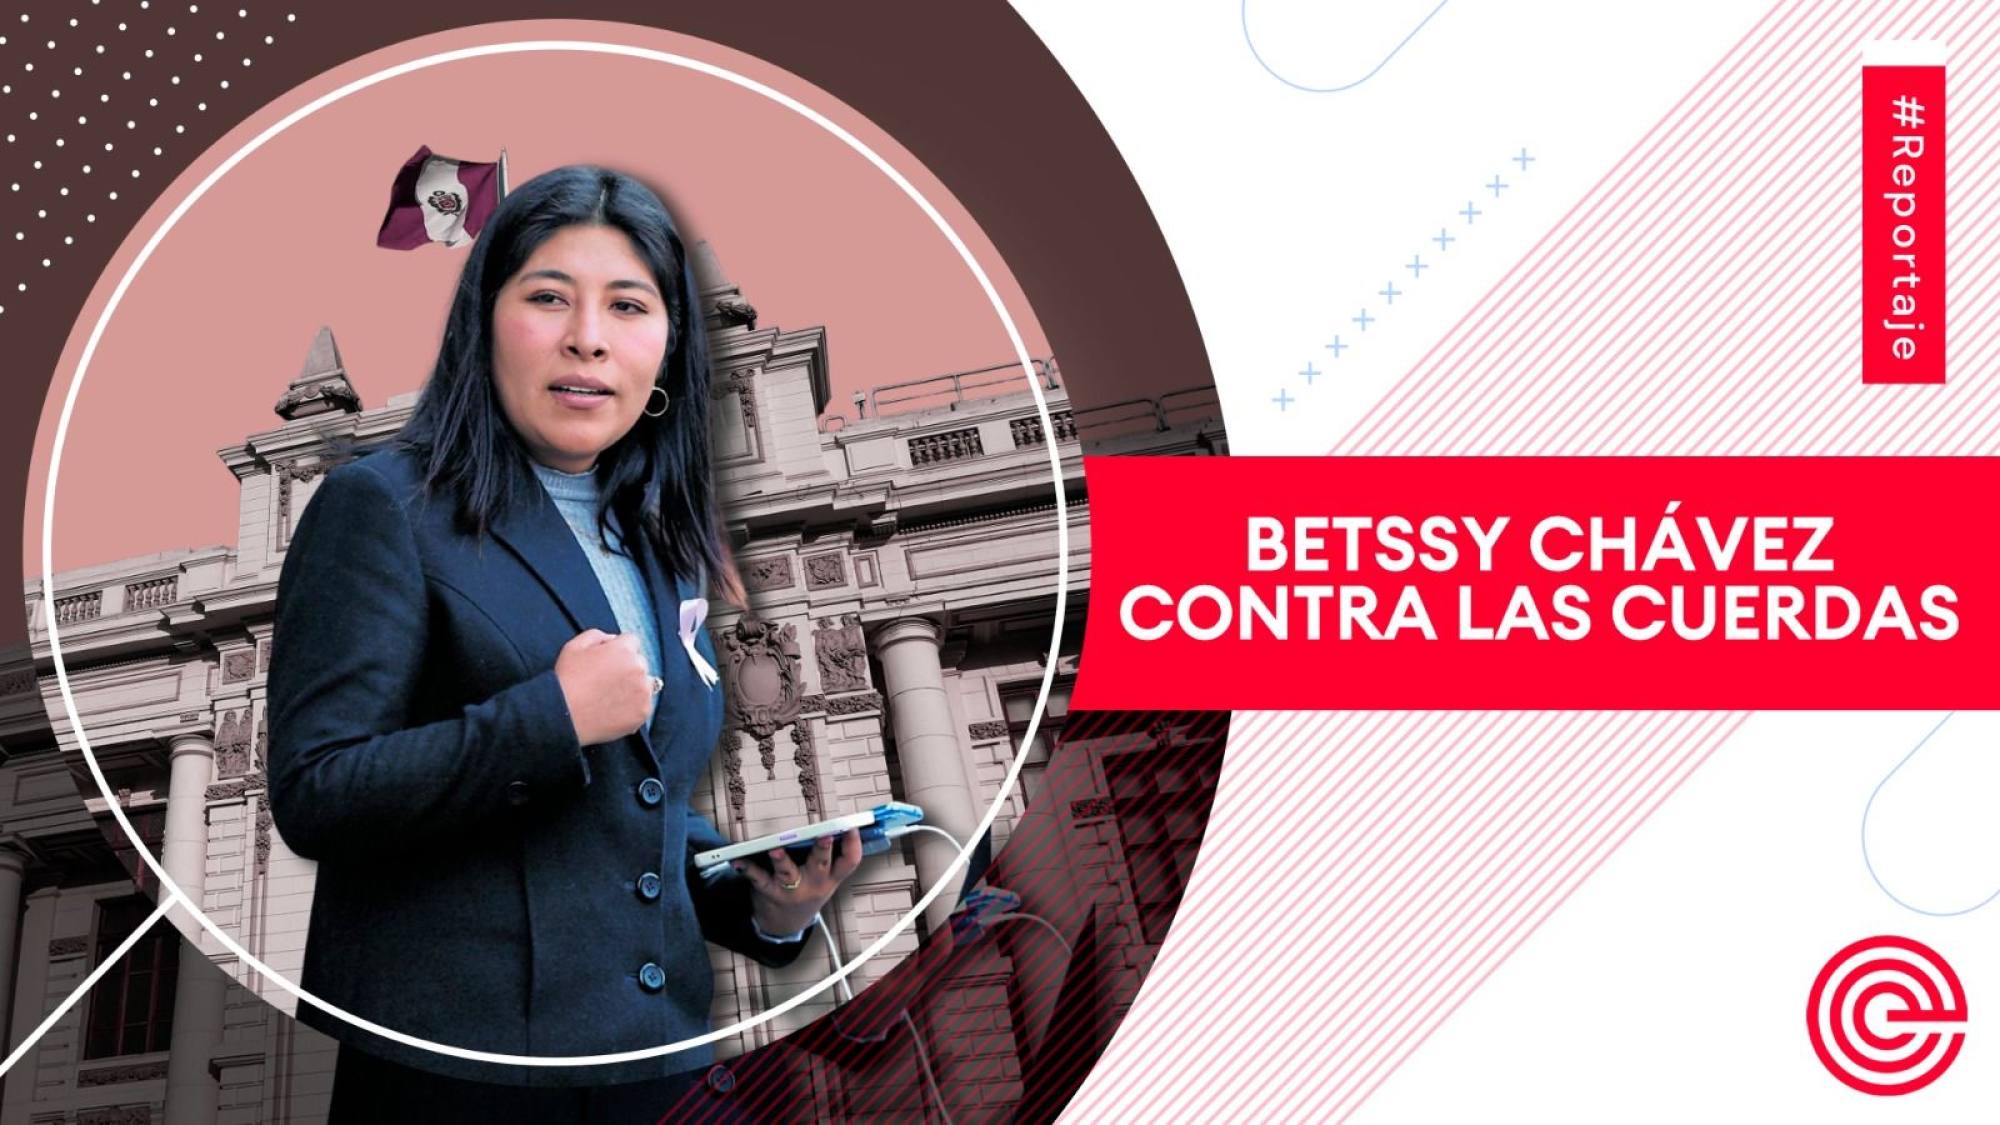 Betssy Chávez contra las cuerdas, Epicentro TV